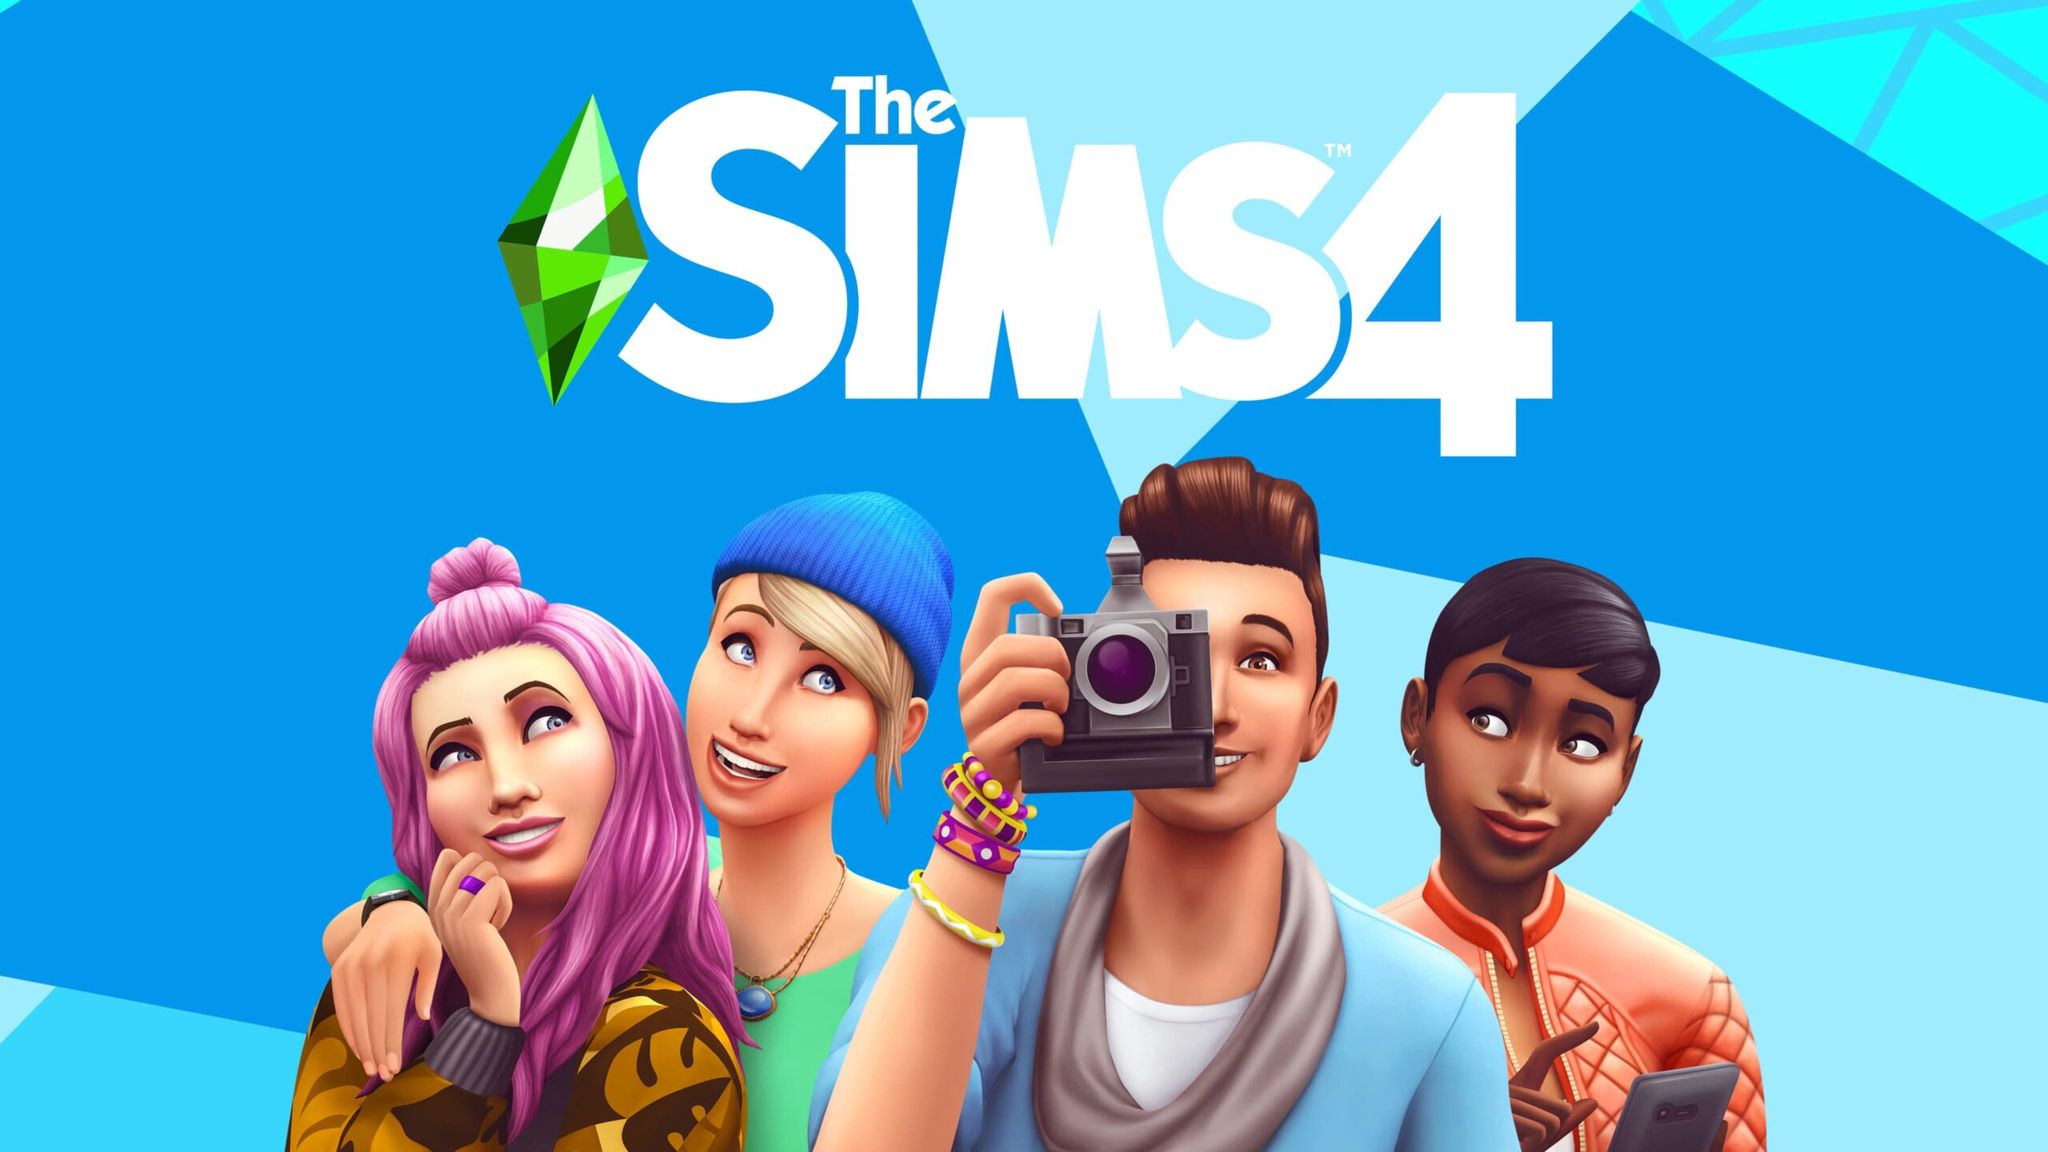 The Sims 4: Thêm tính năng tùy chỉnh “đại từ” trong ngôn ngữ giao tiếp trong game